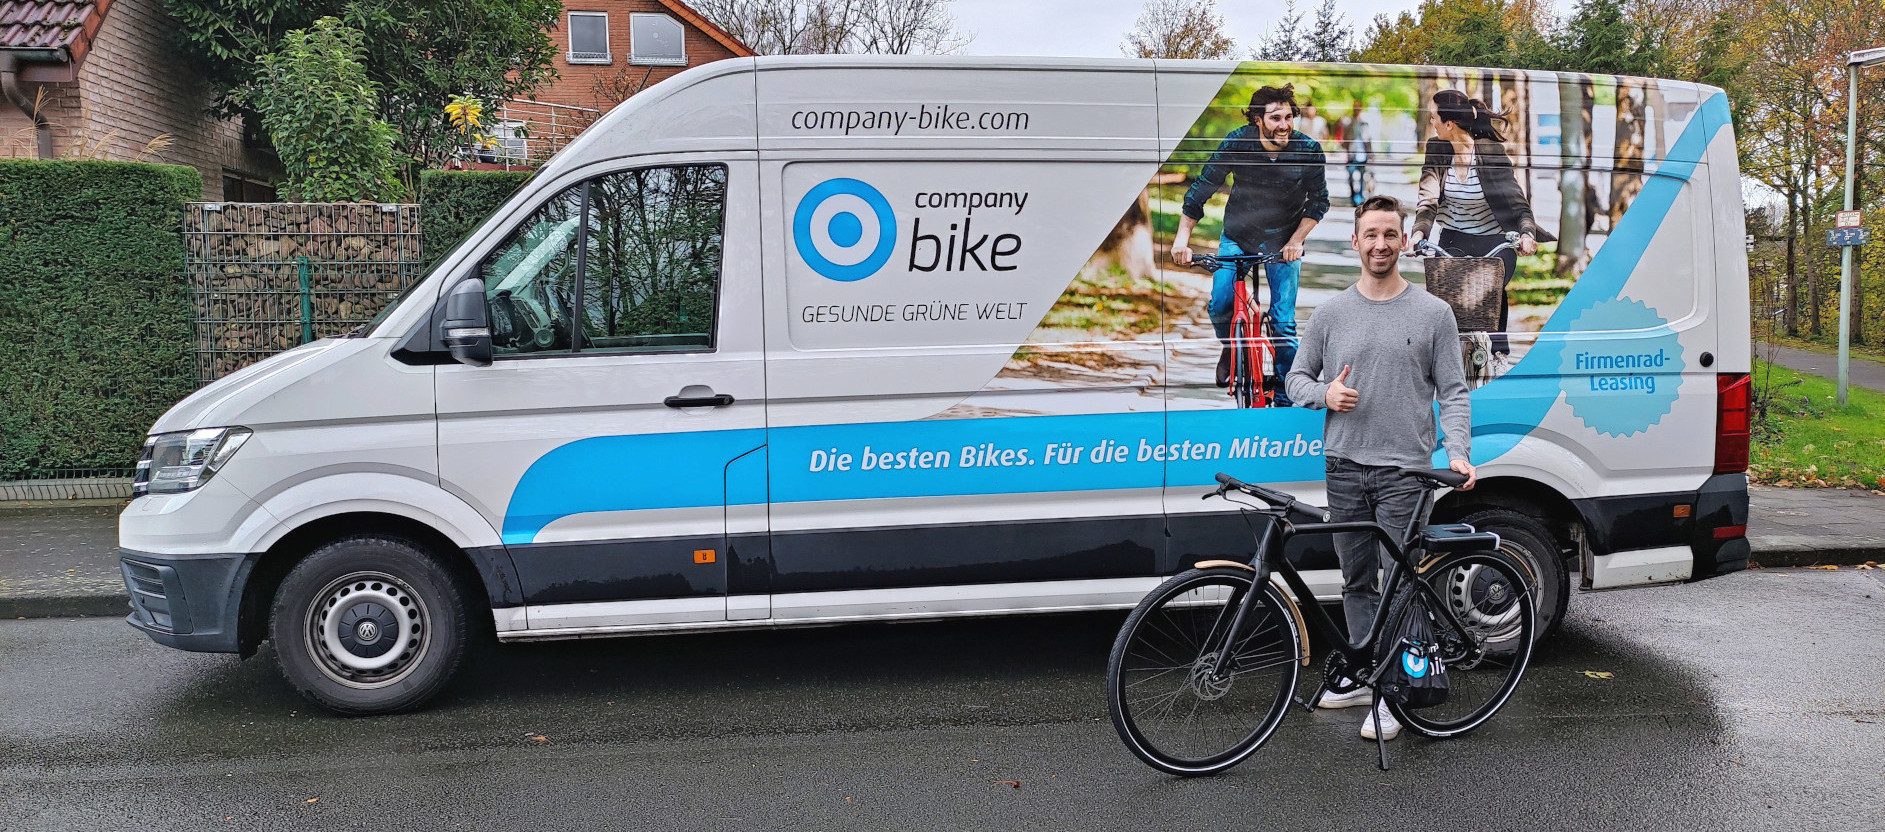 Company Bike motiviert Menschen zum Fahrrad fahren - Robert Krause freut sich über sein gewonnenes Dienstrad